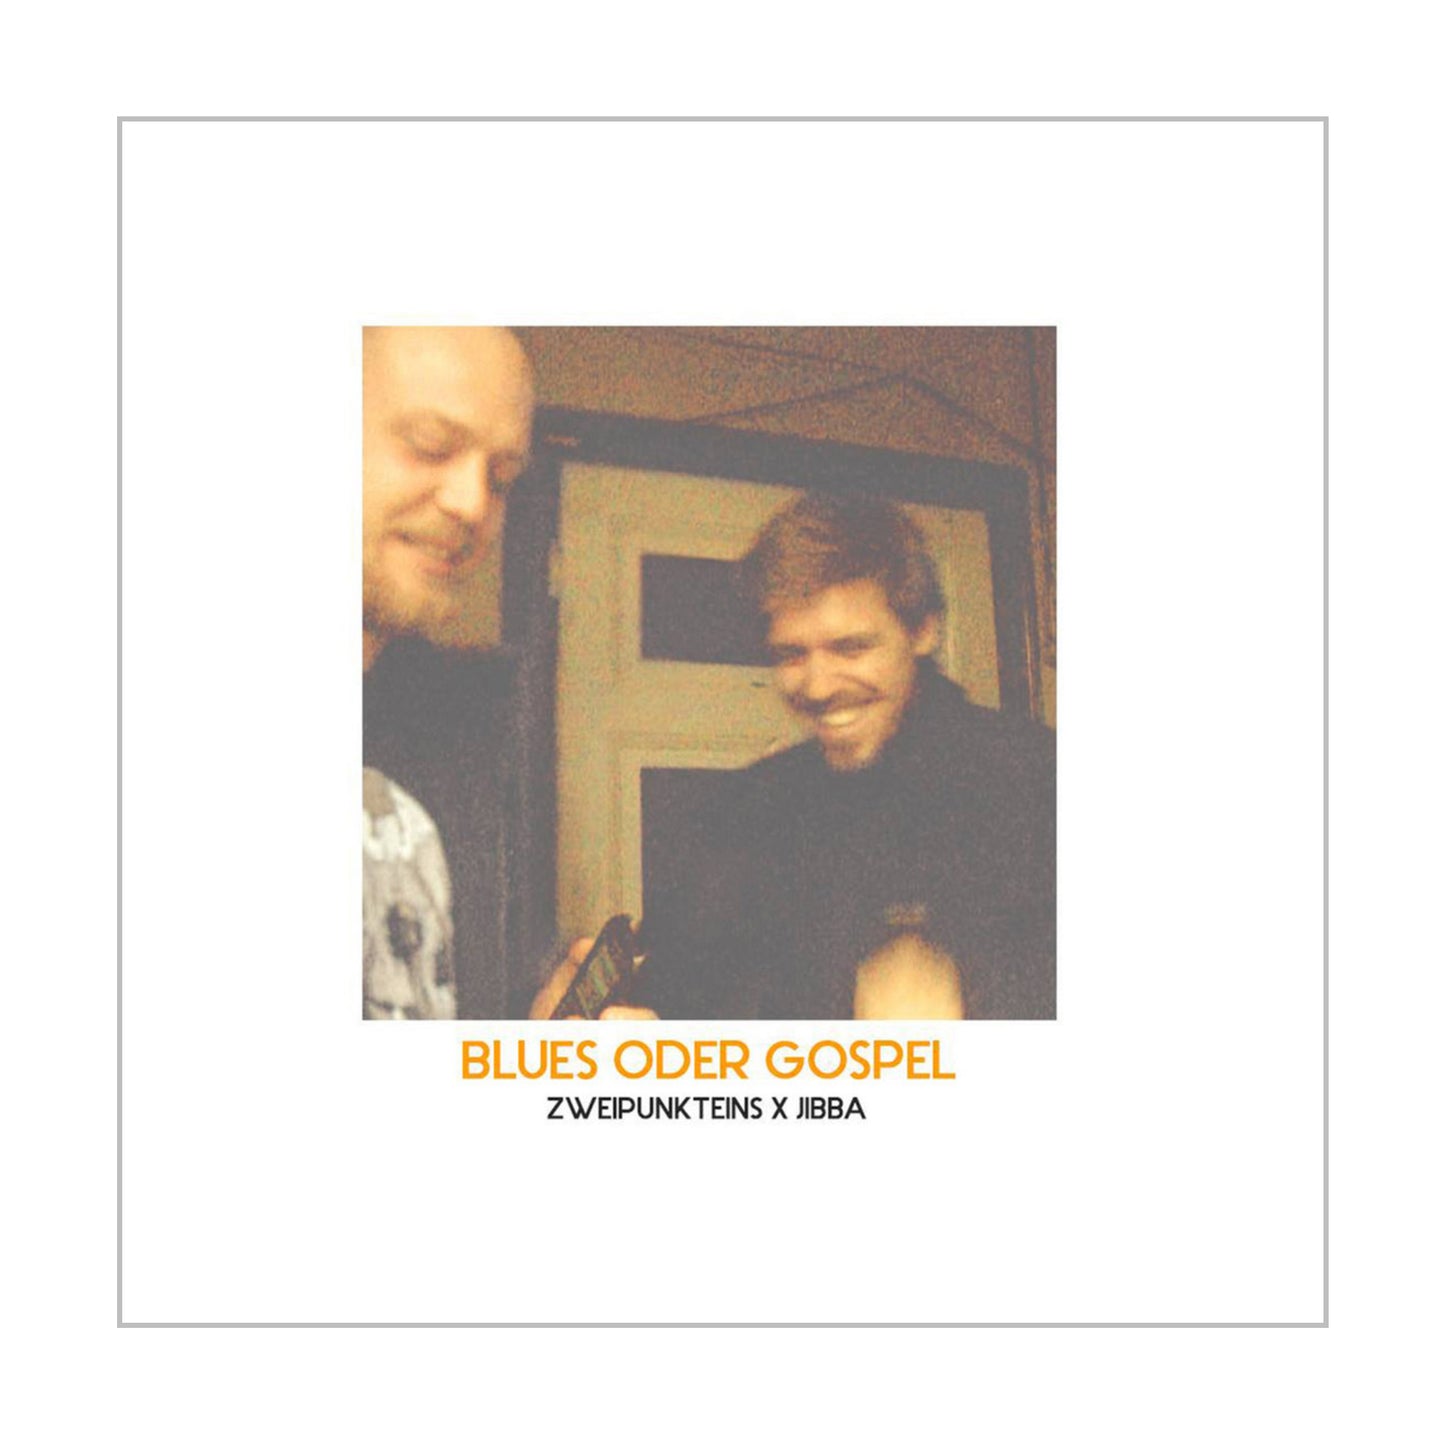 Jibba x Zweipunkteins - Blues oder Gospel (CD/Tape)